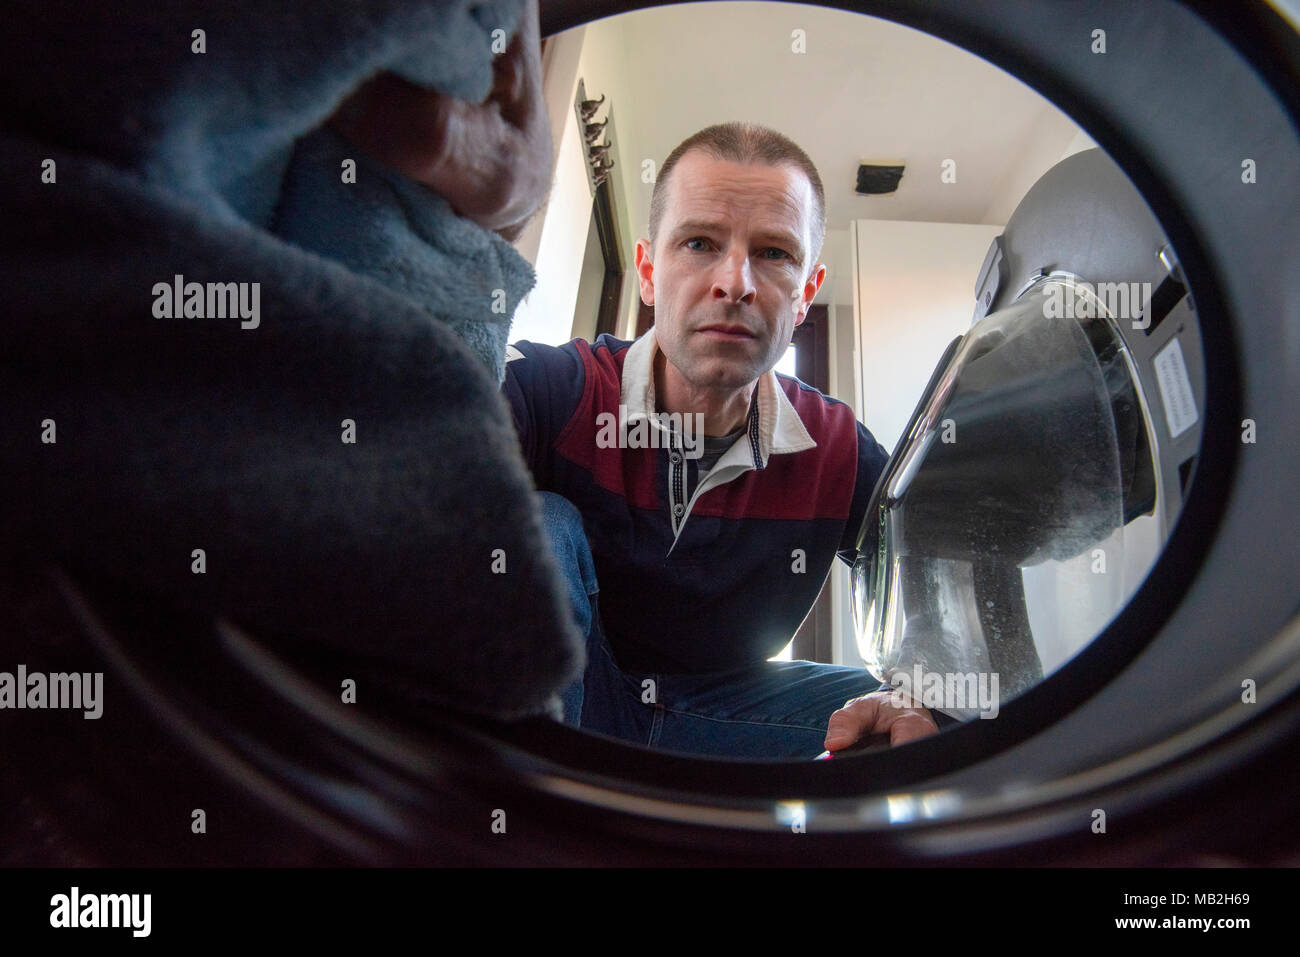 L'uomo il caricamento di una macchina di lavaggio, visto dall'interno del tamburo Foto Stock